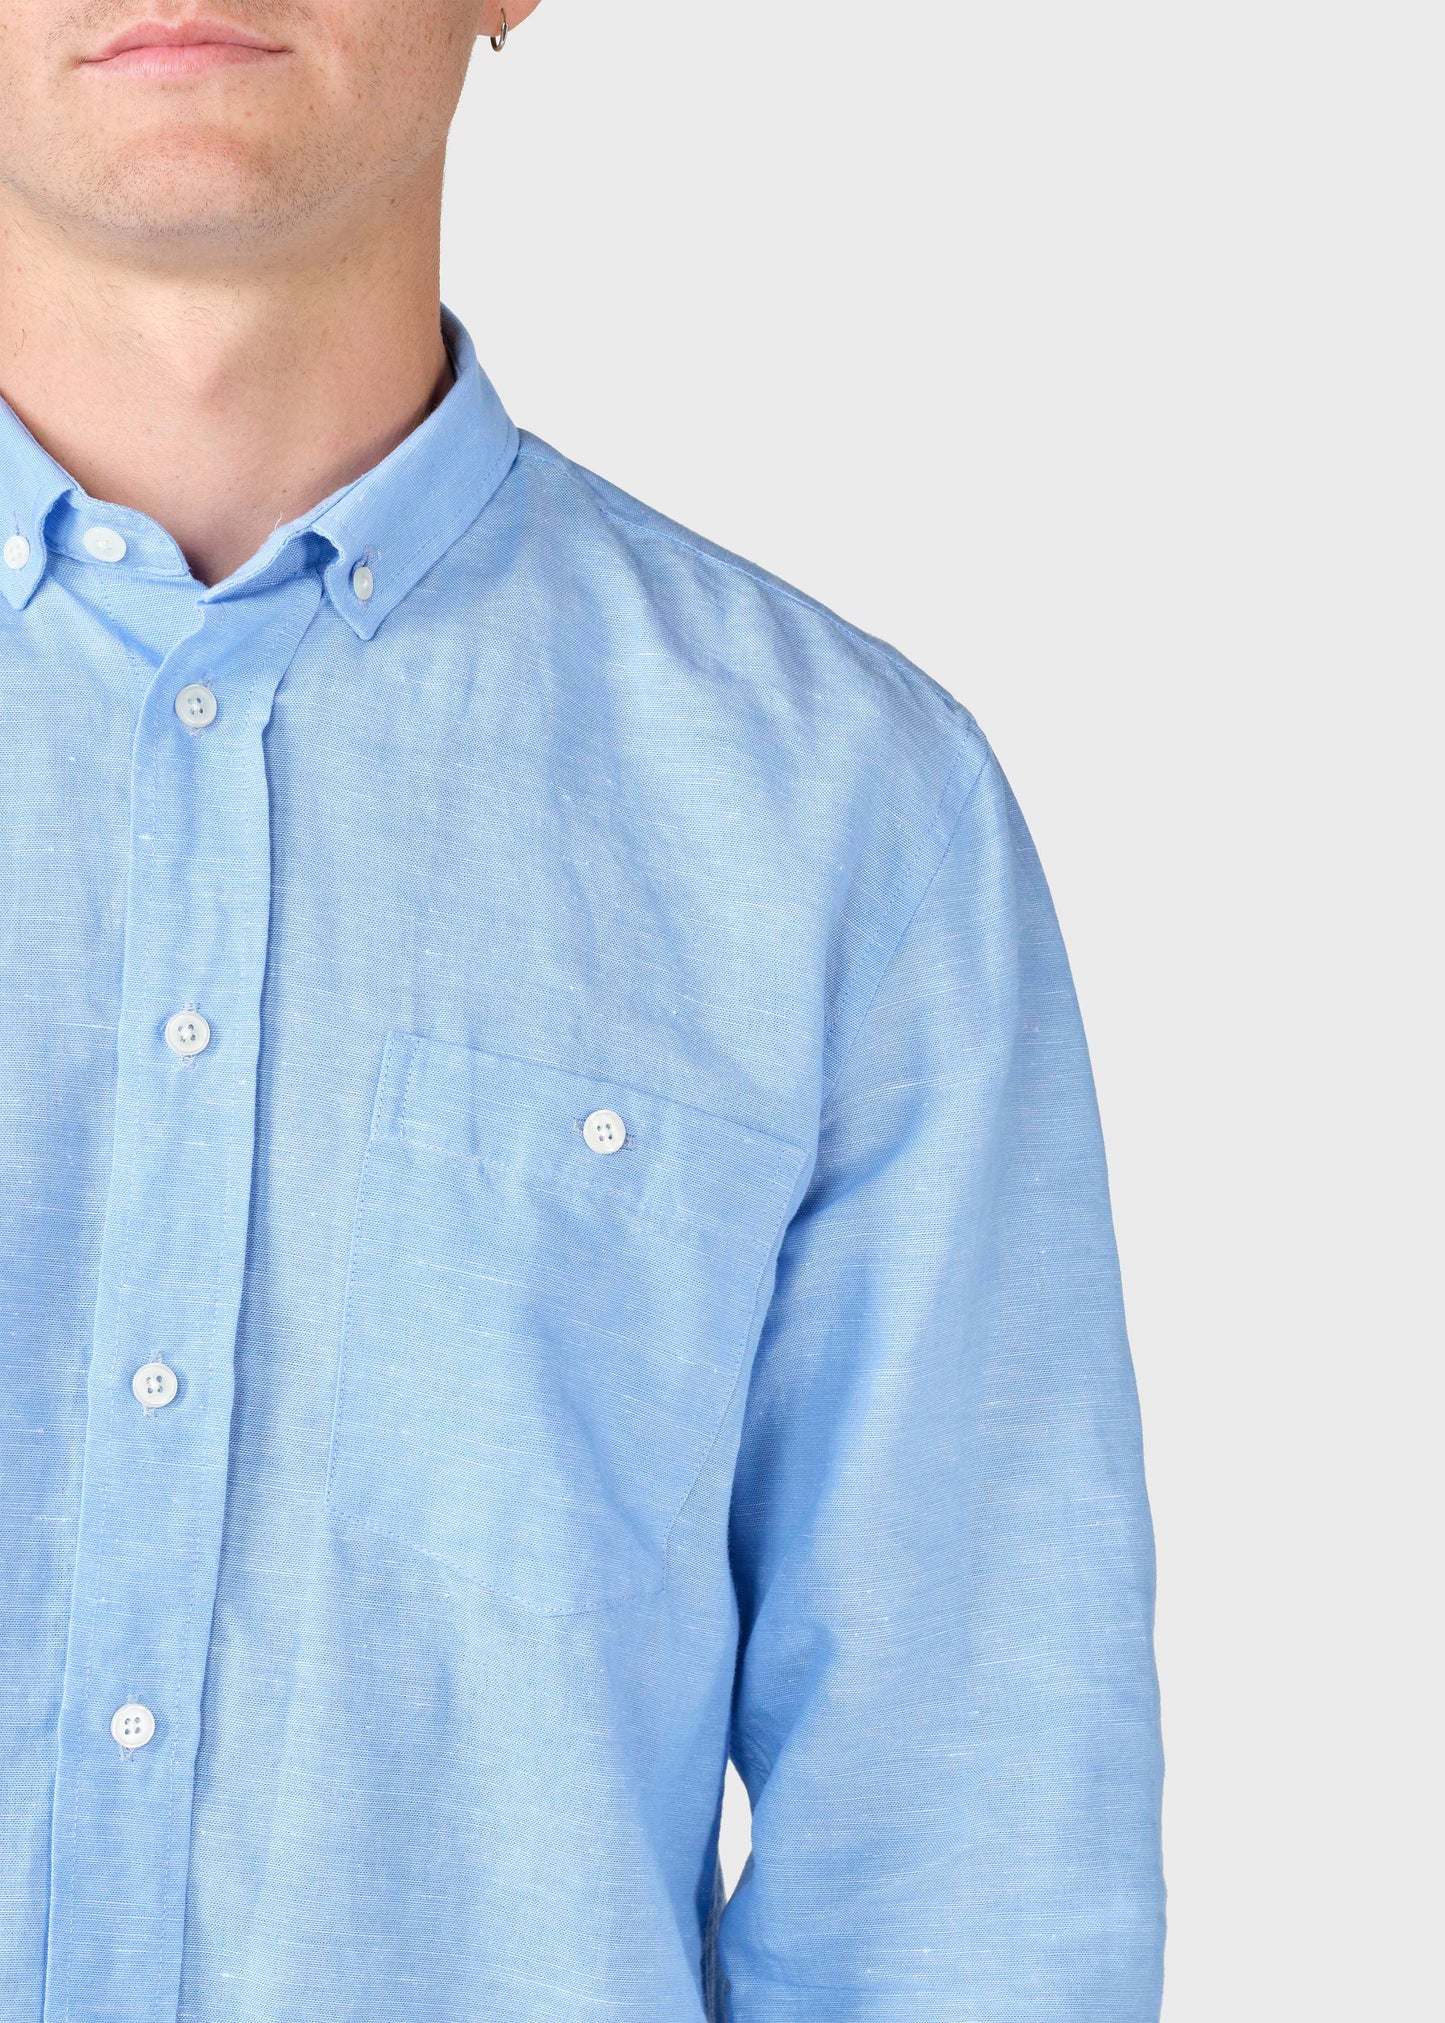 Klitmøller - Benjamin linen shirt - Blue melange